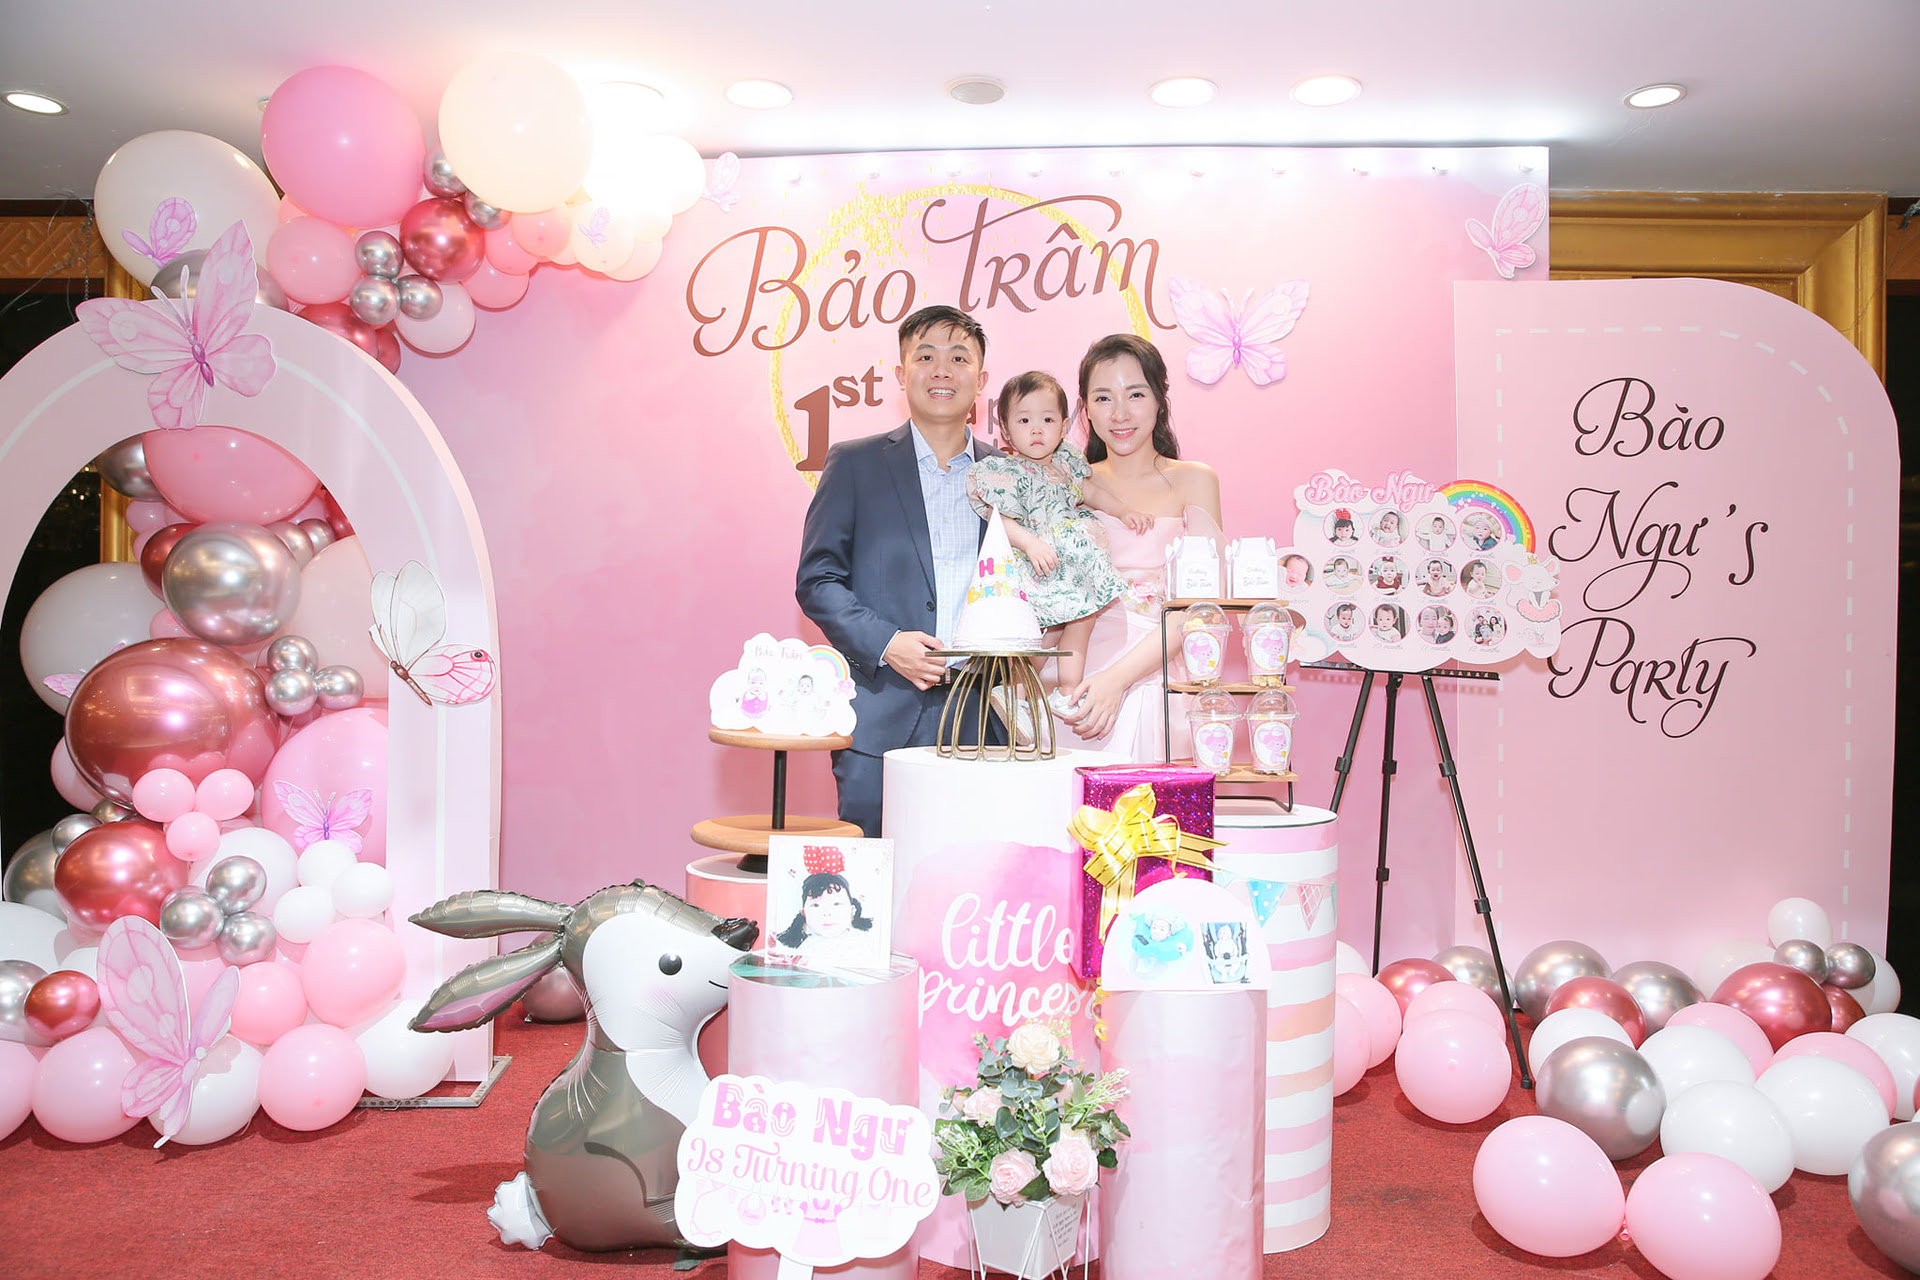 Trang trí sinh nhật cho bé Bào Ngư tại Hà Nội - Chill decor